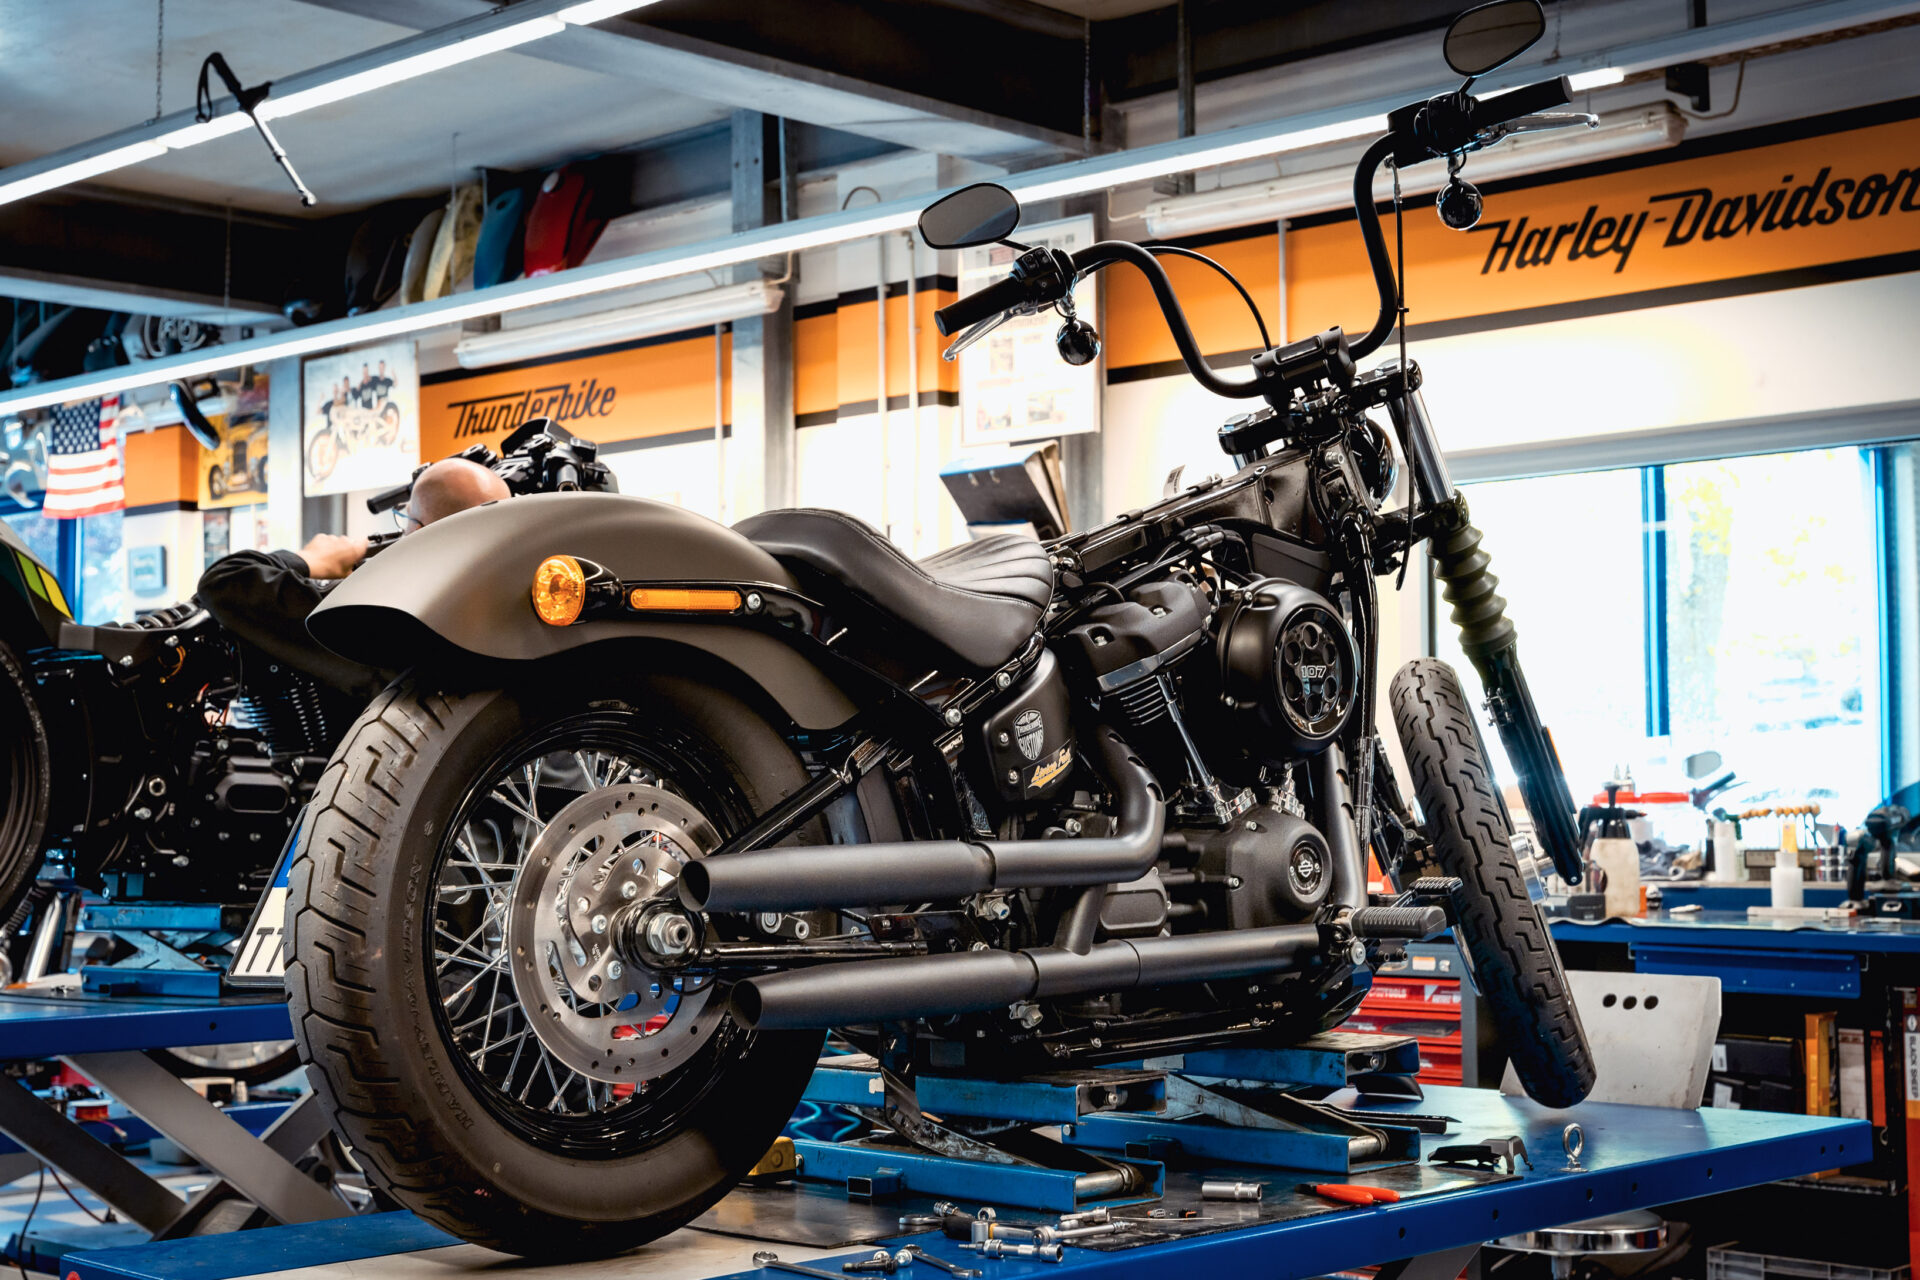 Auspuffband / Hitzeschutzband für Motorräder bei Thunderbike